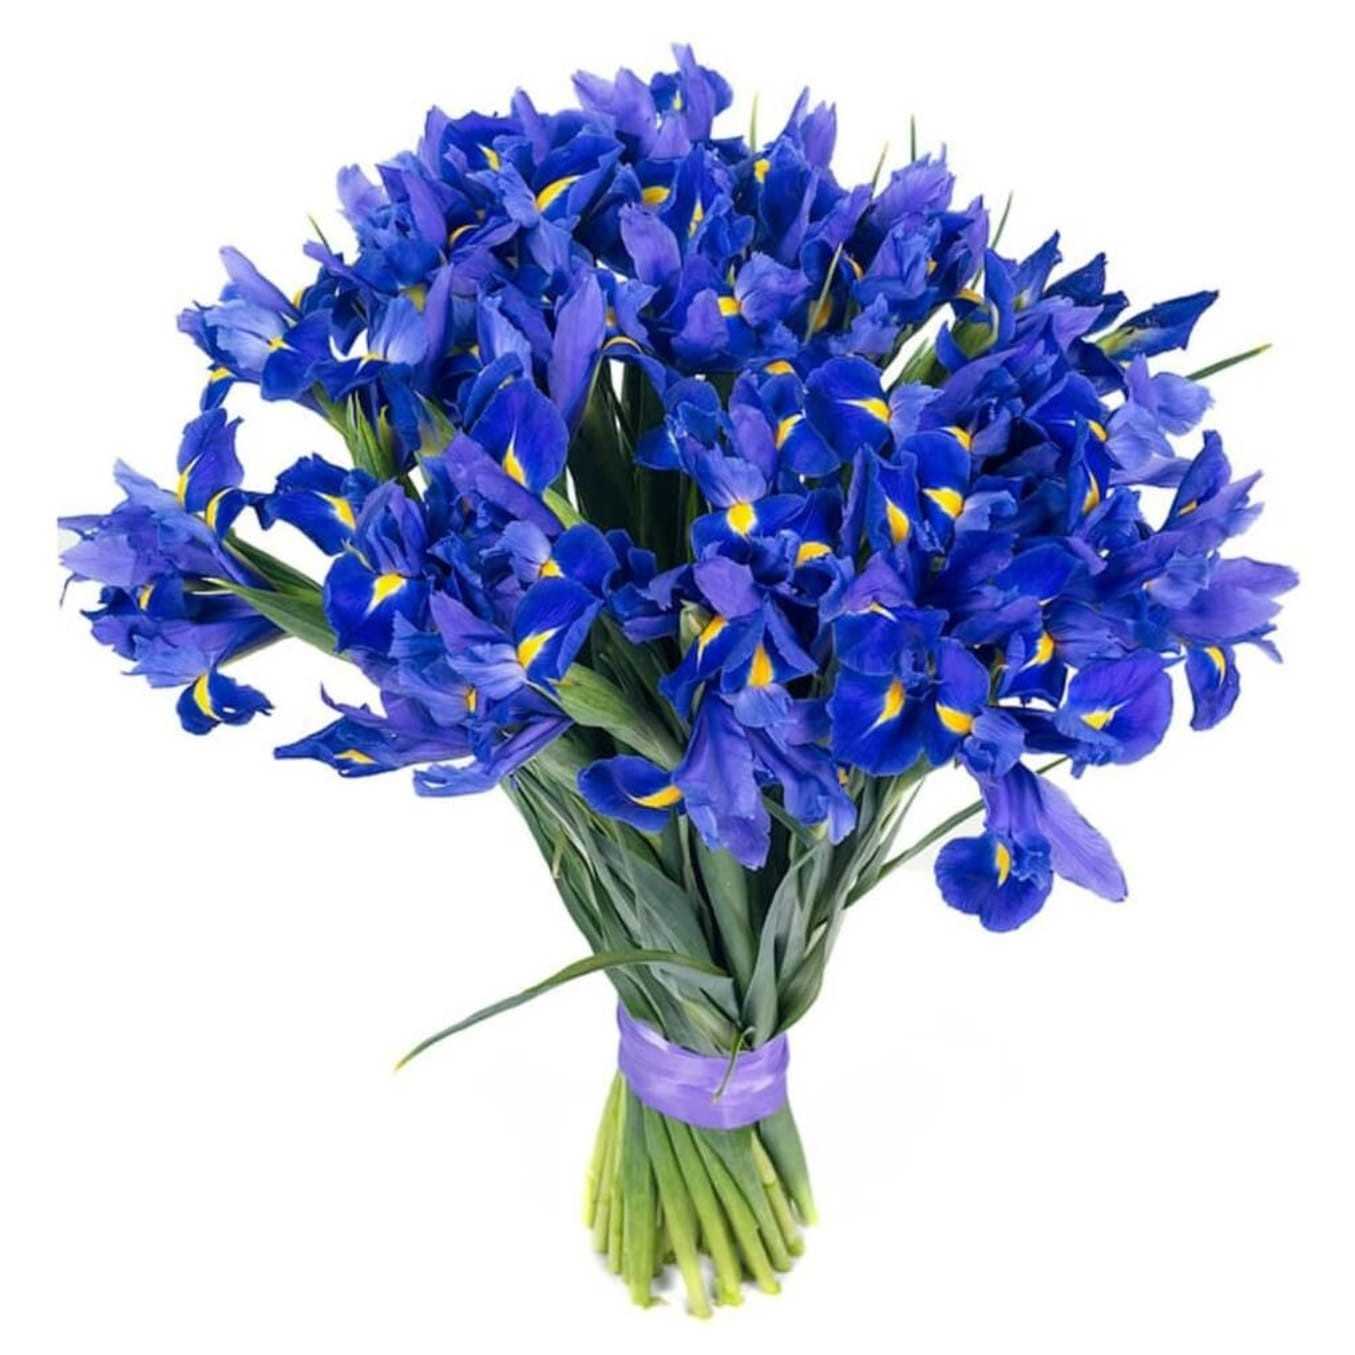 Irises - Blue